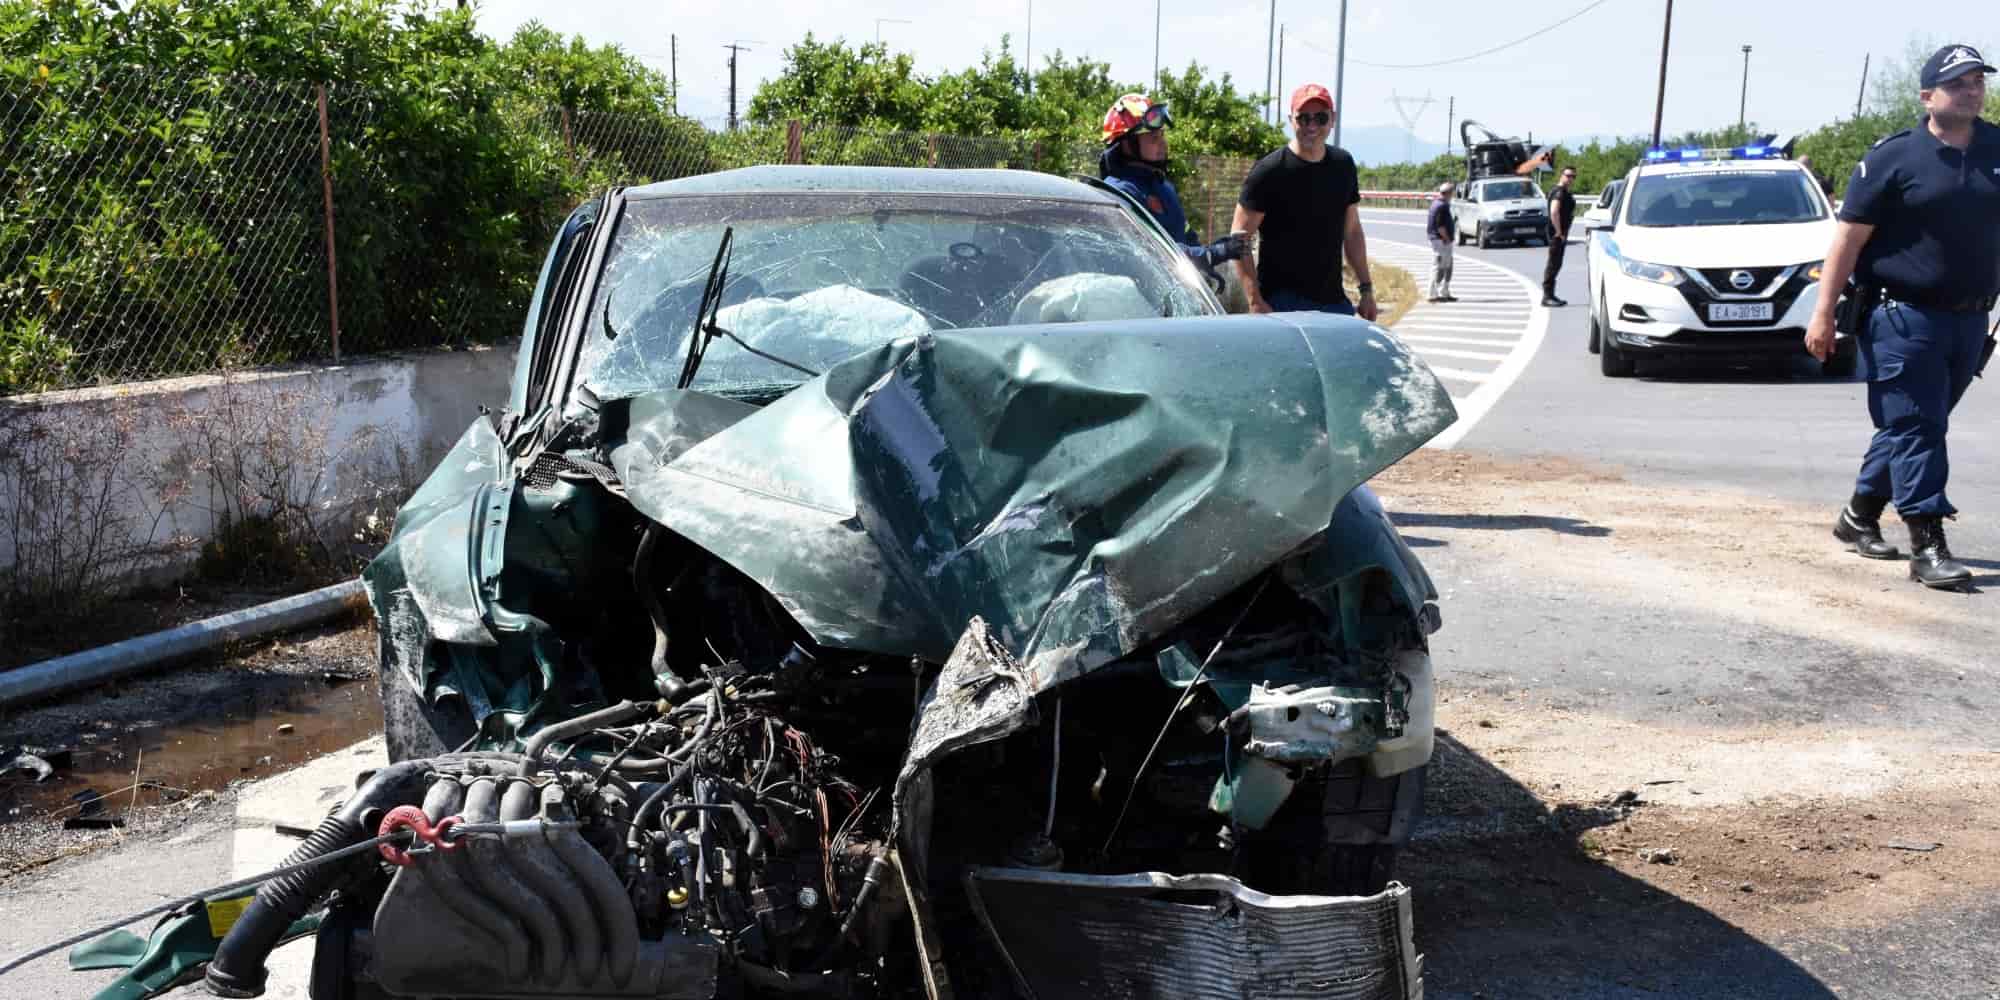 troxaio 5 7 2022 1 - Τροχαία: Ποια μέρα και ώρα γίνονται τα περισσότερα ατυχήματα - Οι οδηγοί που τρακάρουν περισσότερο